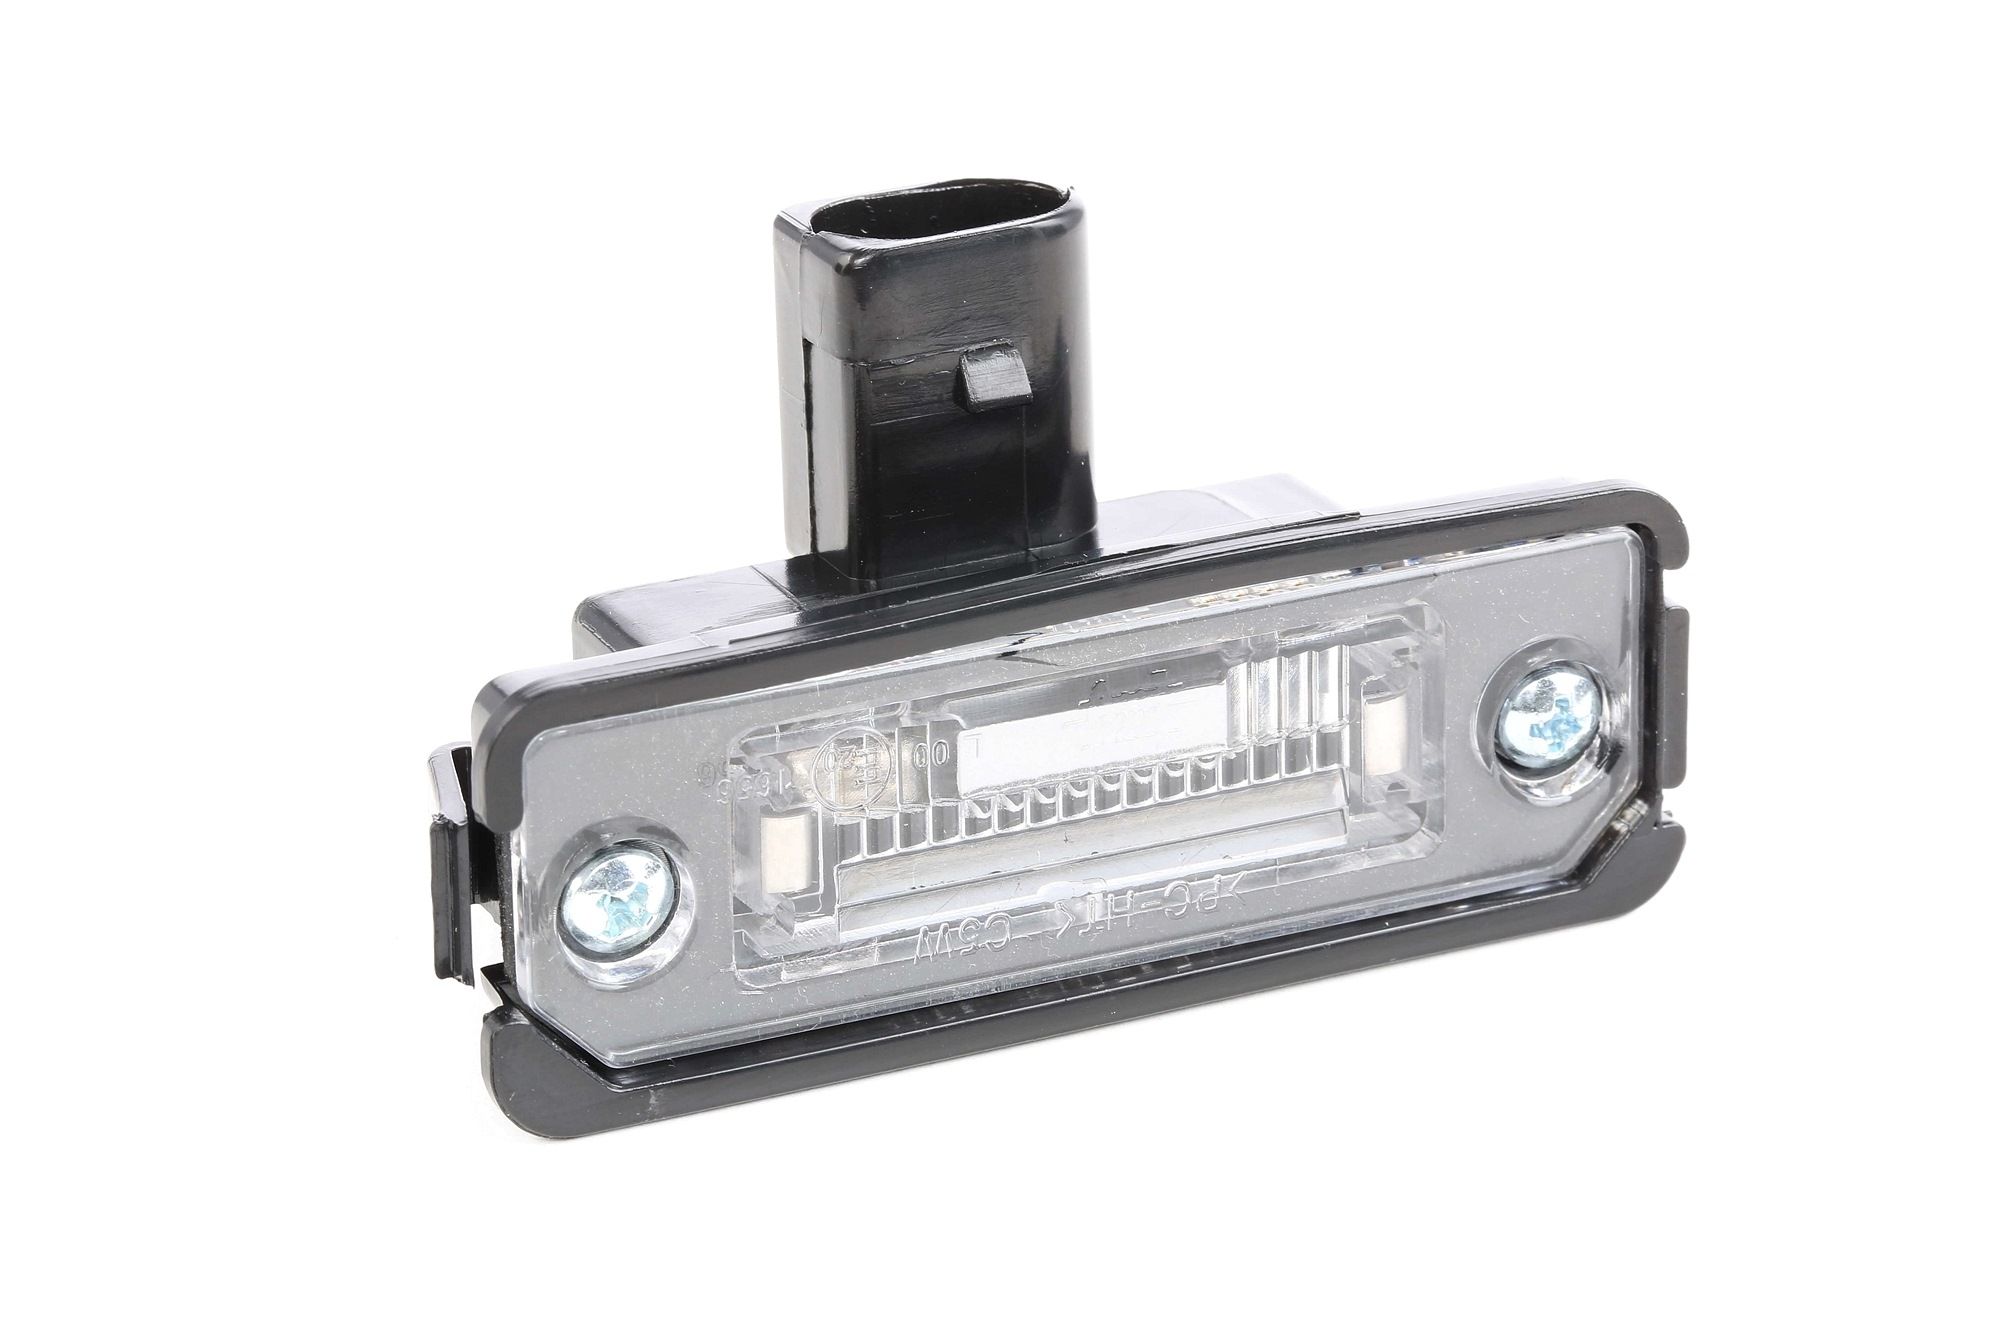 Kennzeichenbeleuchtung für Golf 4 LED und Halogen kaufen - Original  Qualität und günstige Preise bei AUTODOC